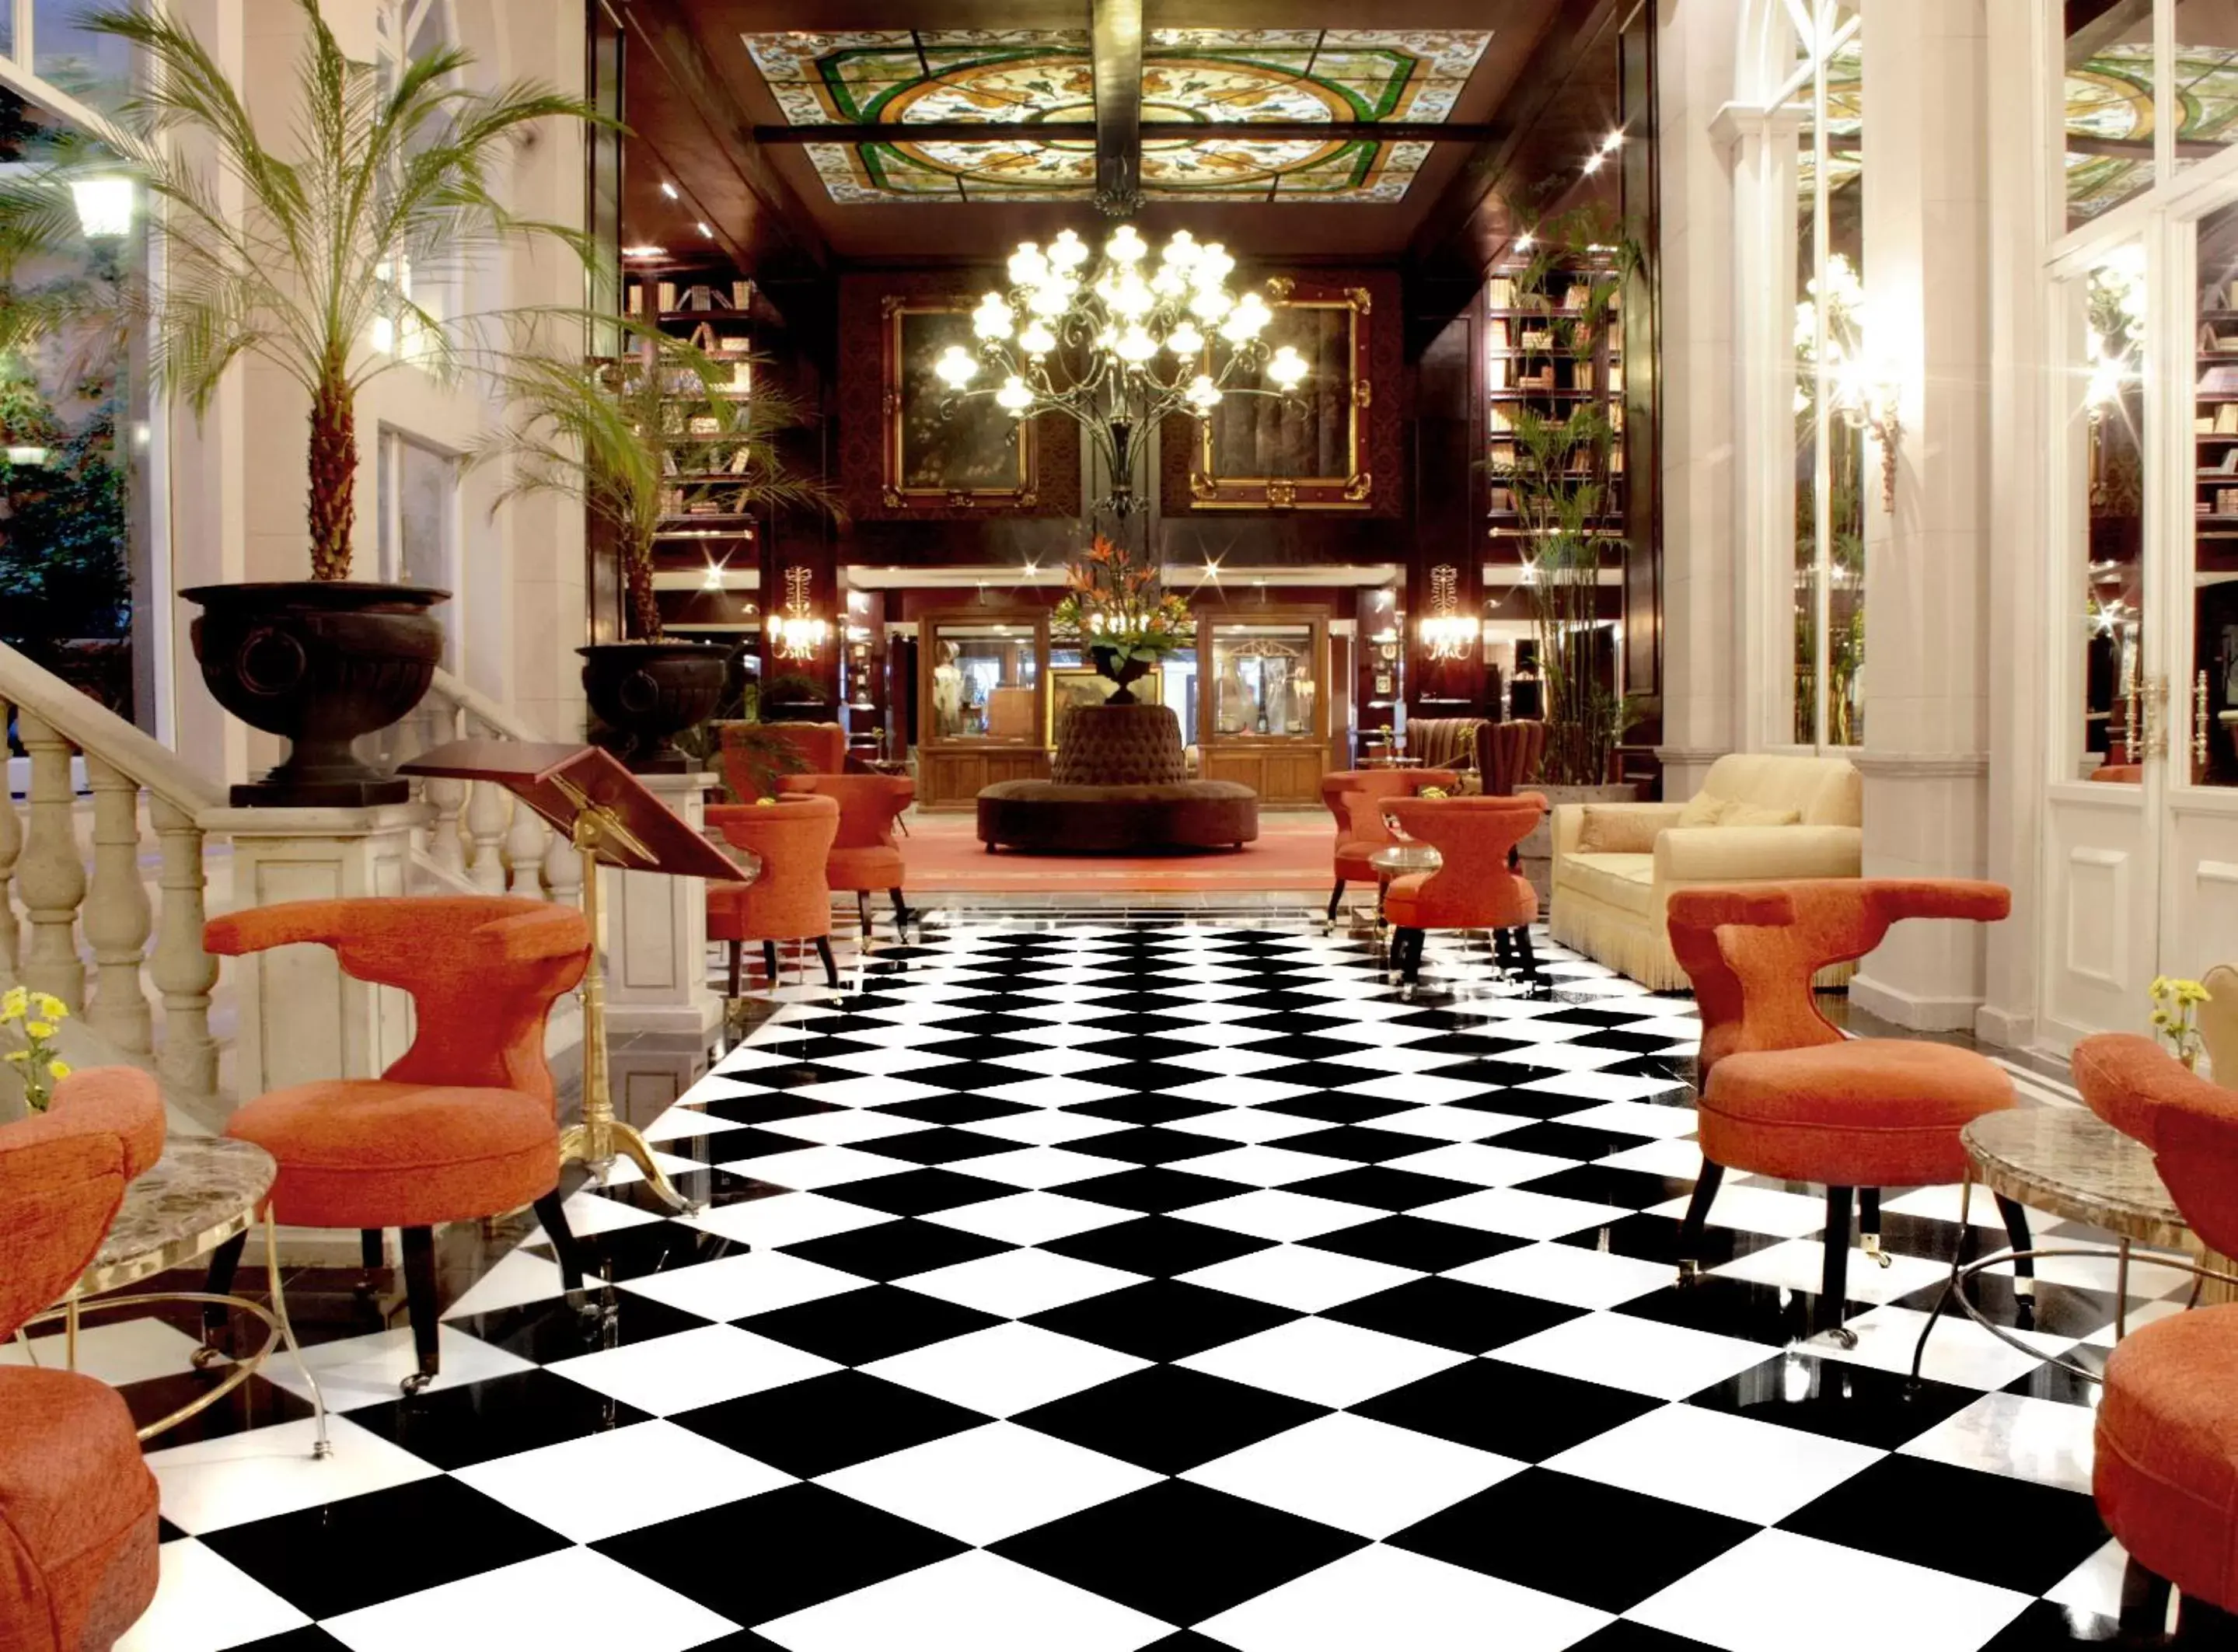 Lobby or reception in Hotel Geneve CD de Mexico